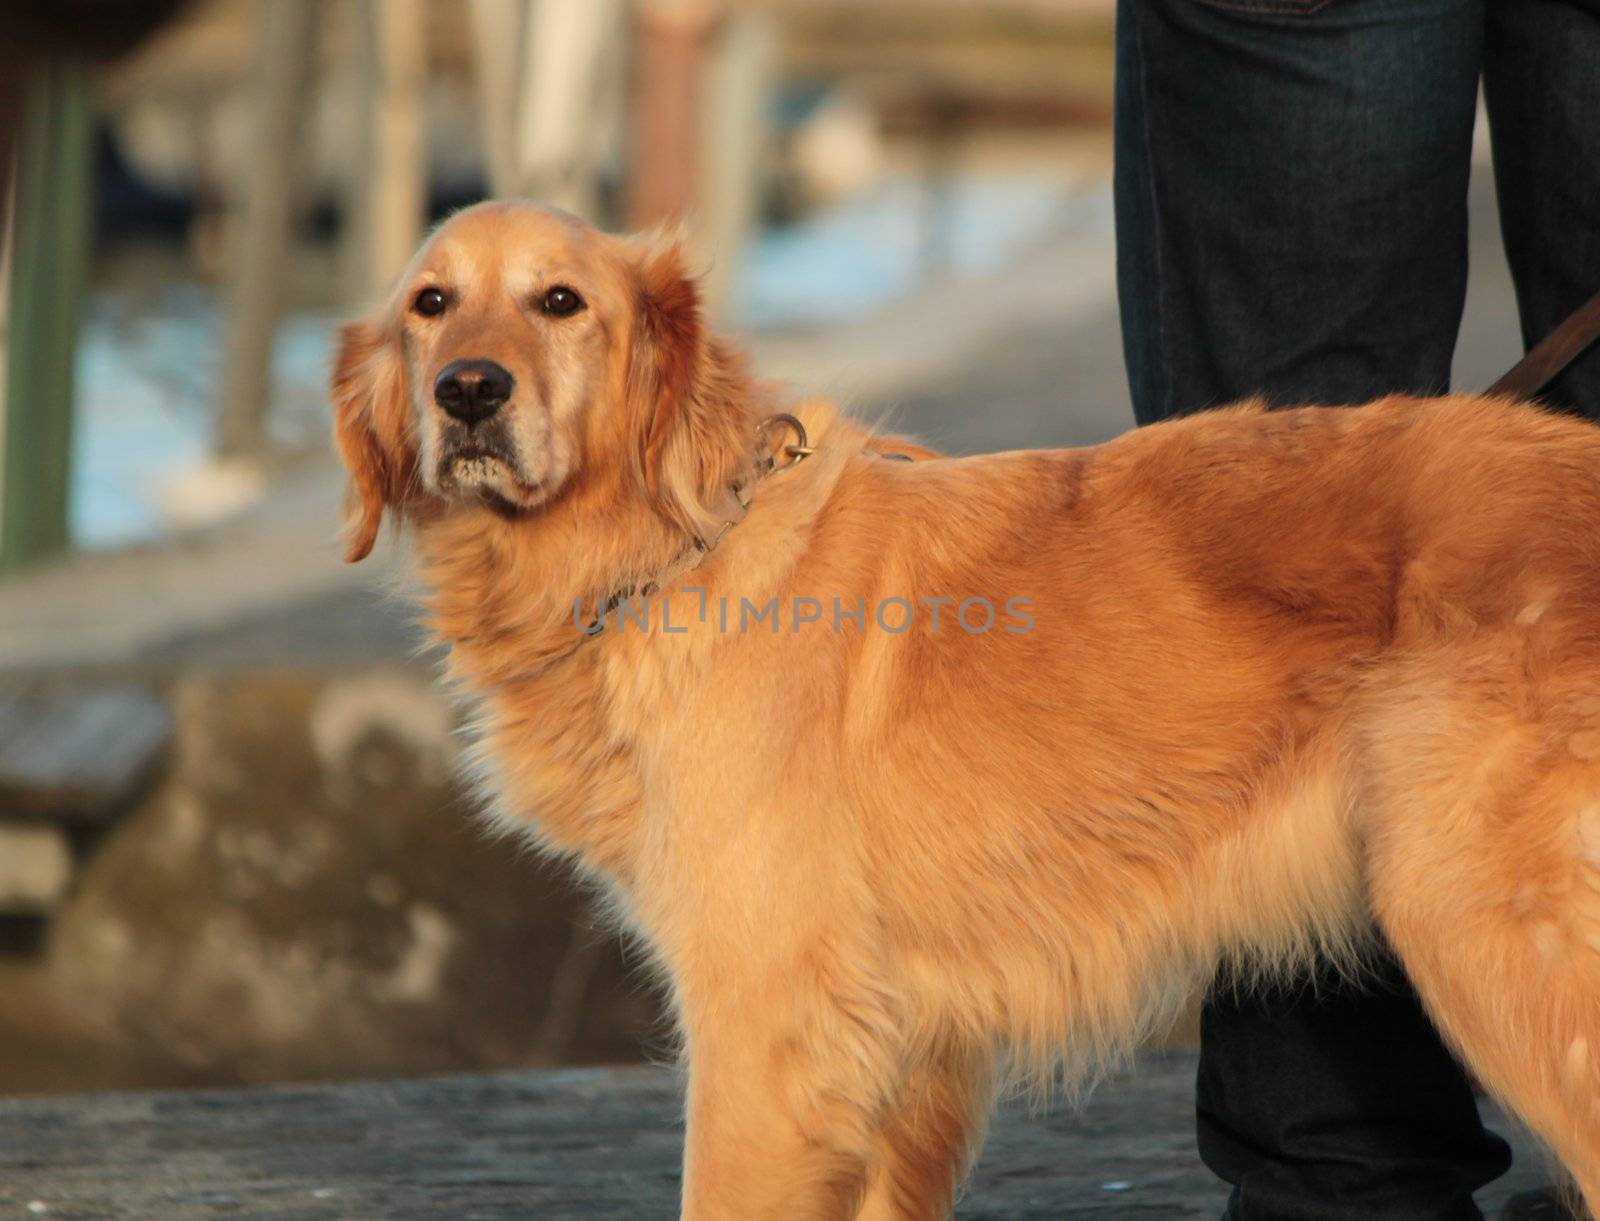 Golden labrador retriever dog standing next to its master